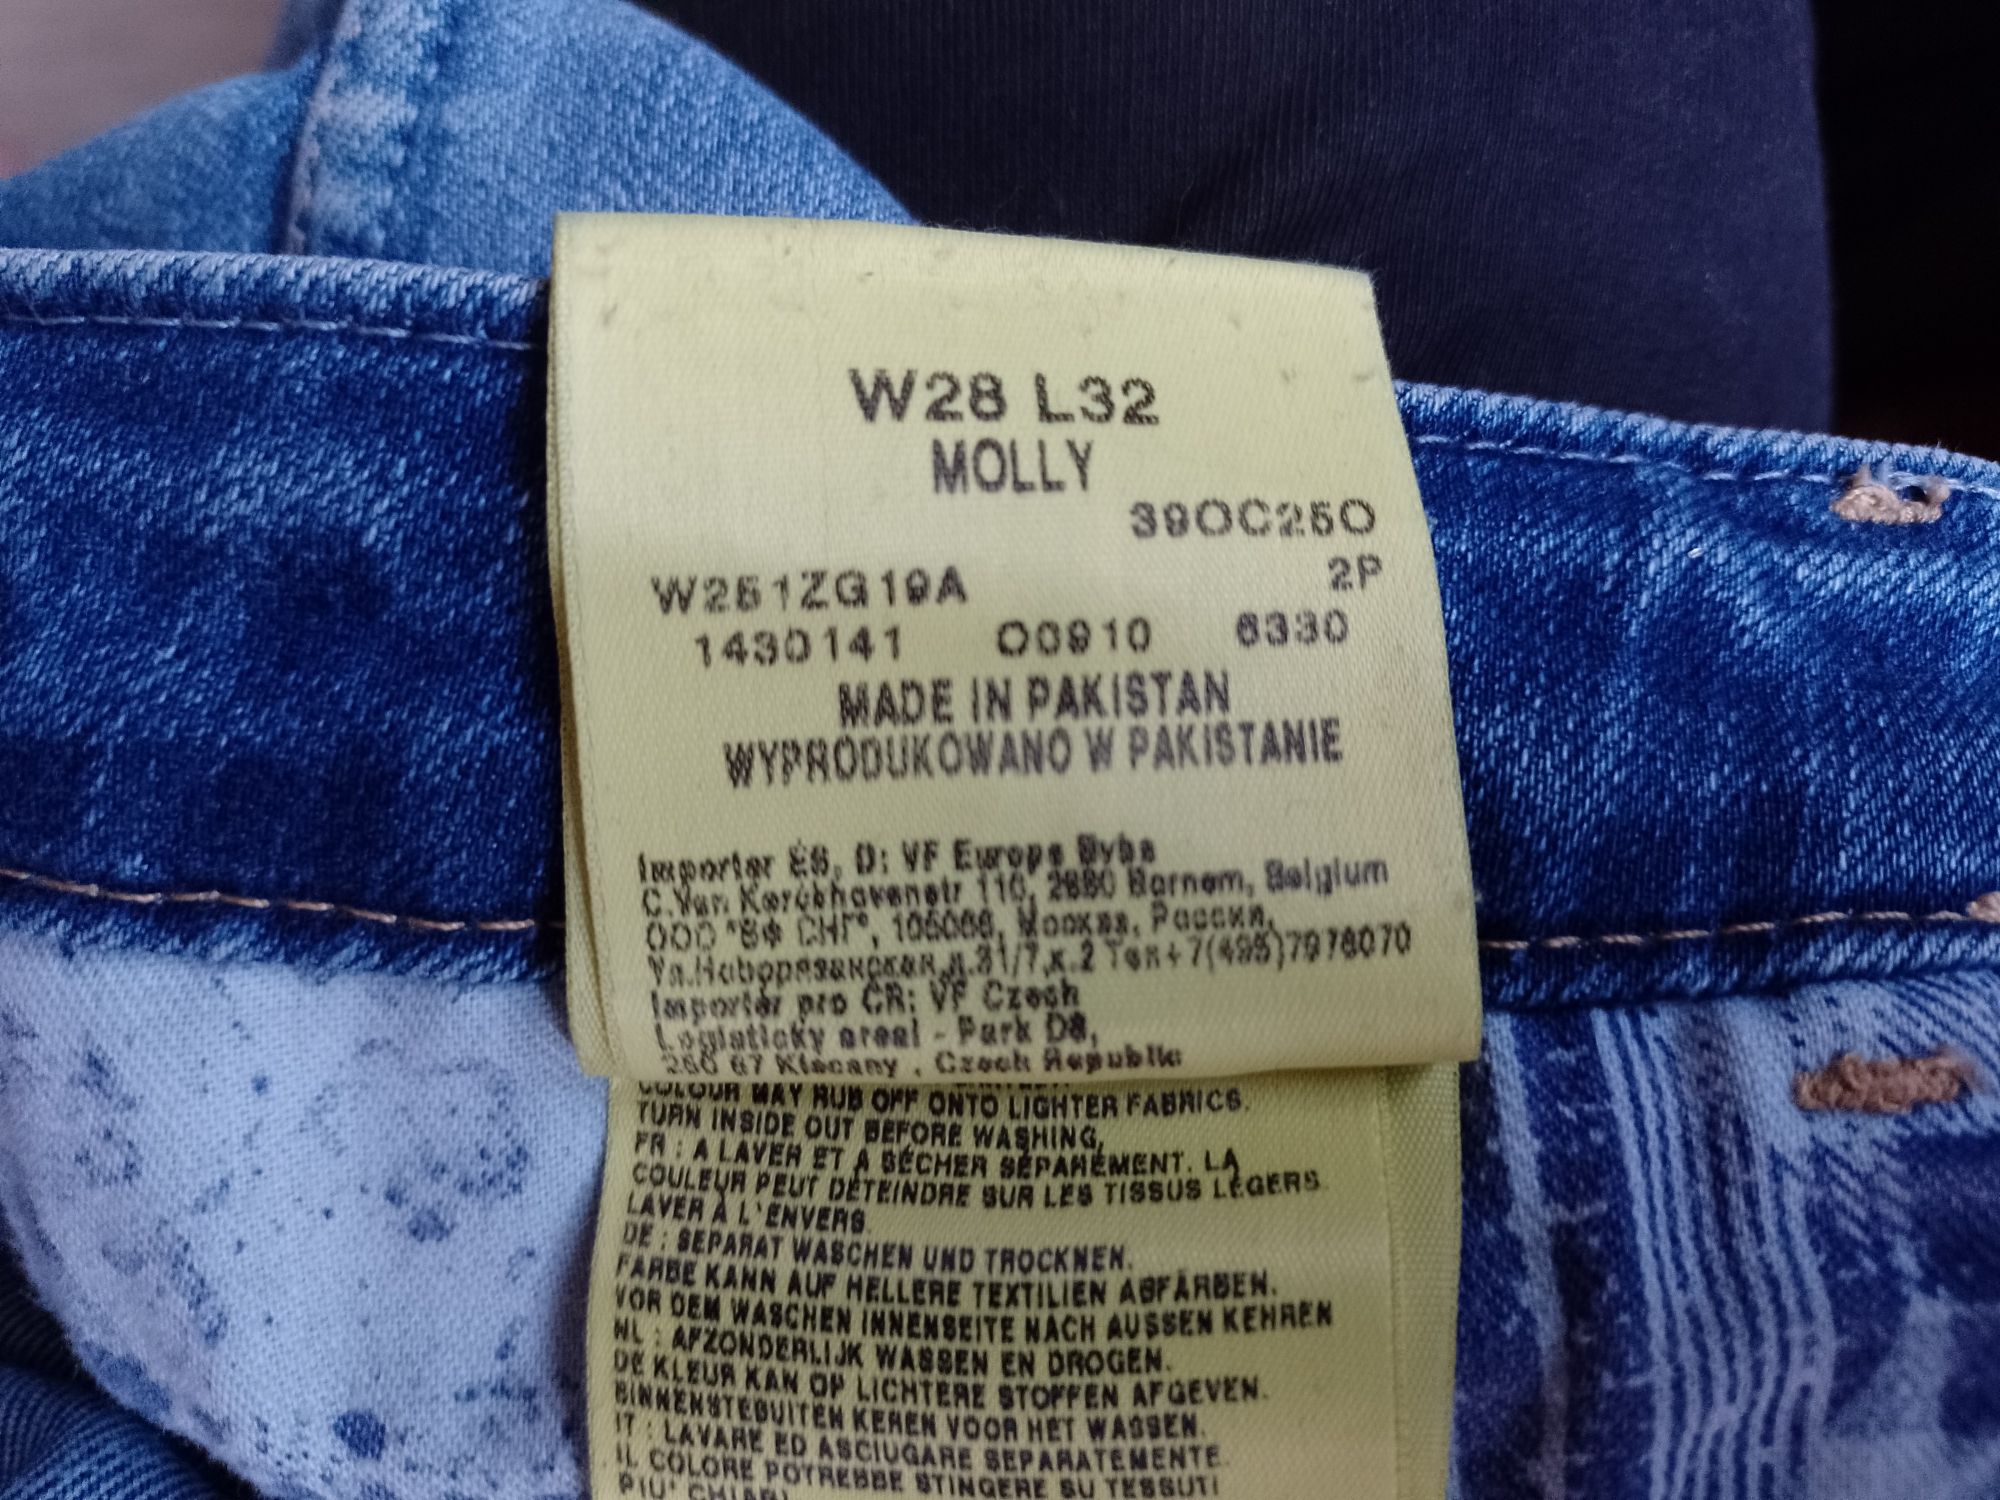 Sprzedam damskie spodnie jeansowe firmy Wrangler rozmiar 32.